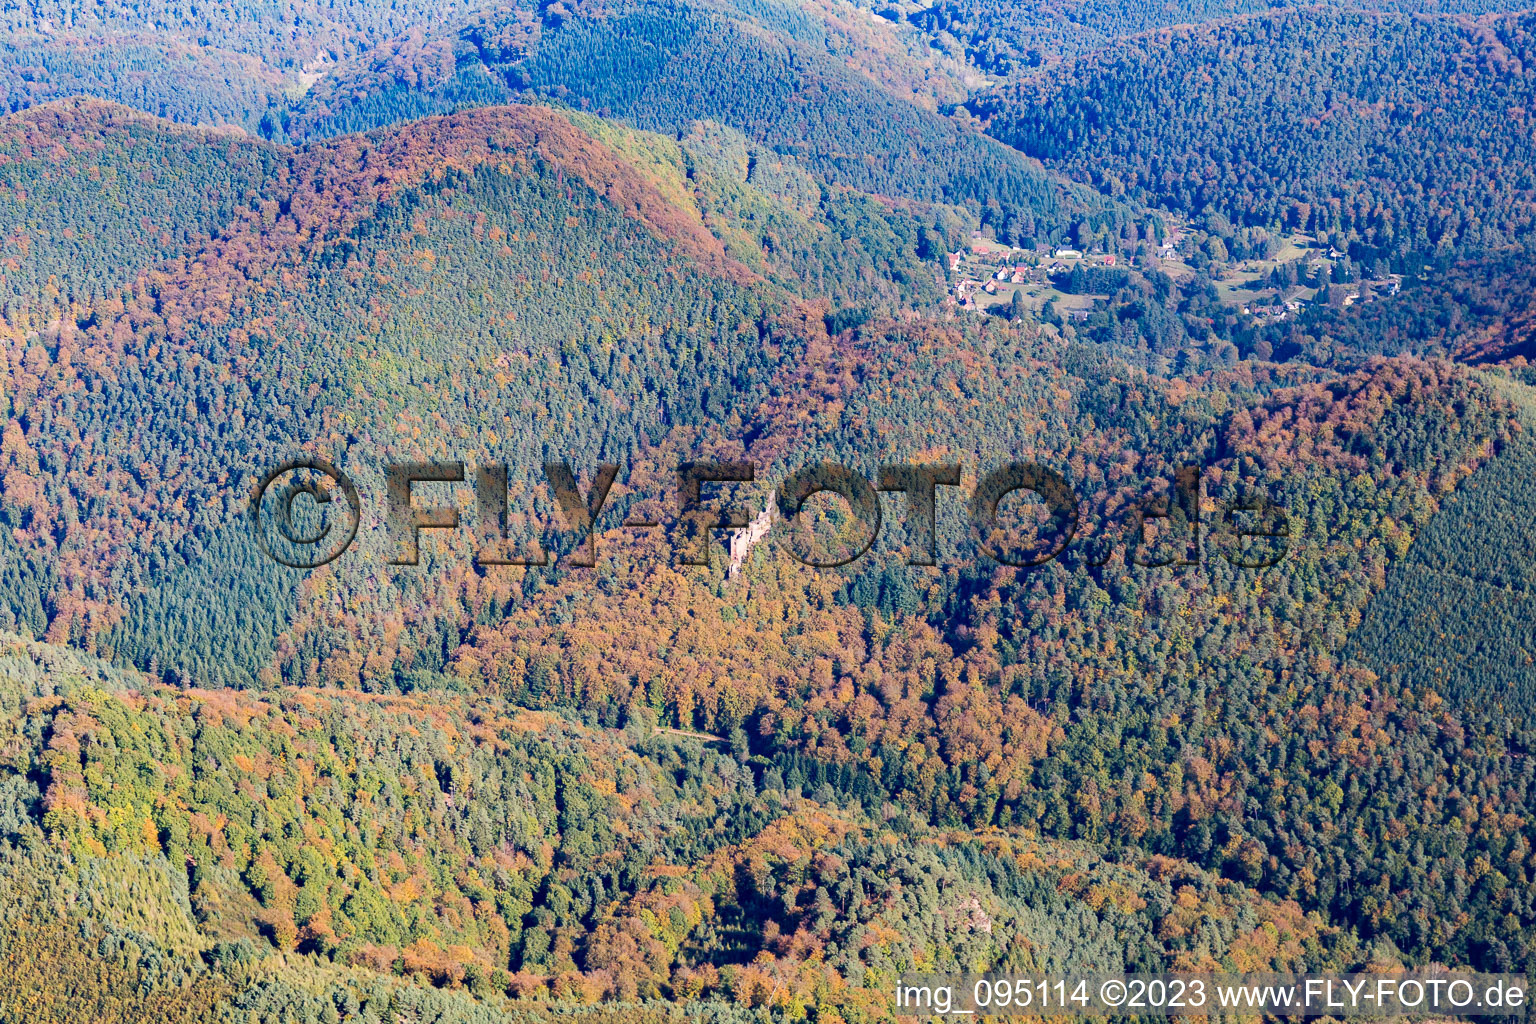 Dambach im Bundesland Bas-Rhin, Frankreich aus der Luft betrachtet